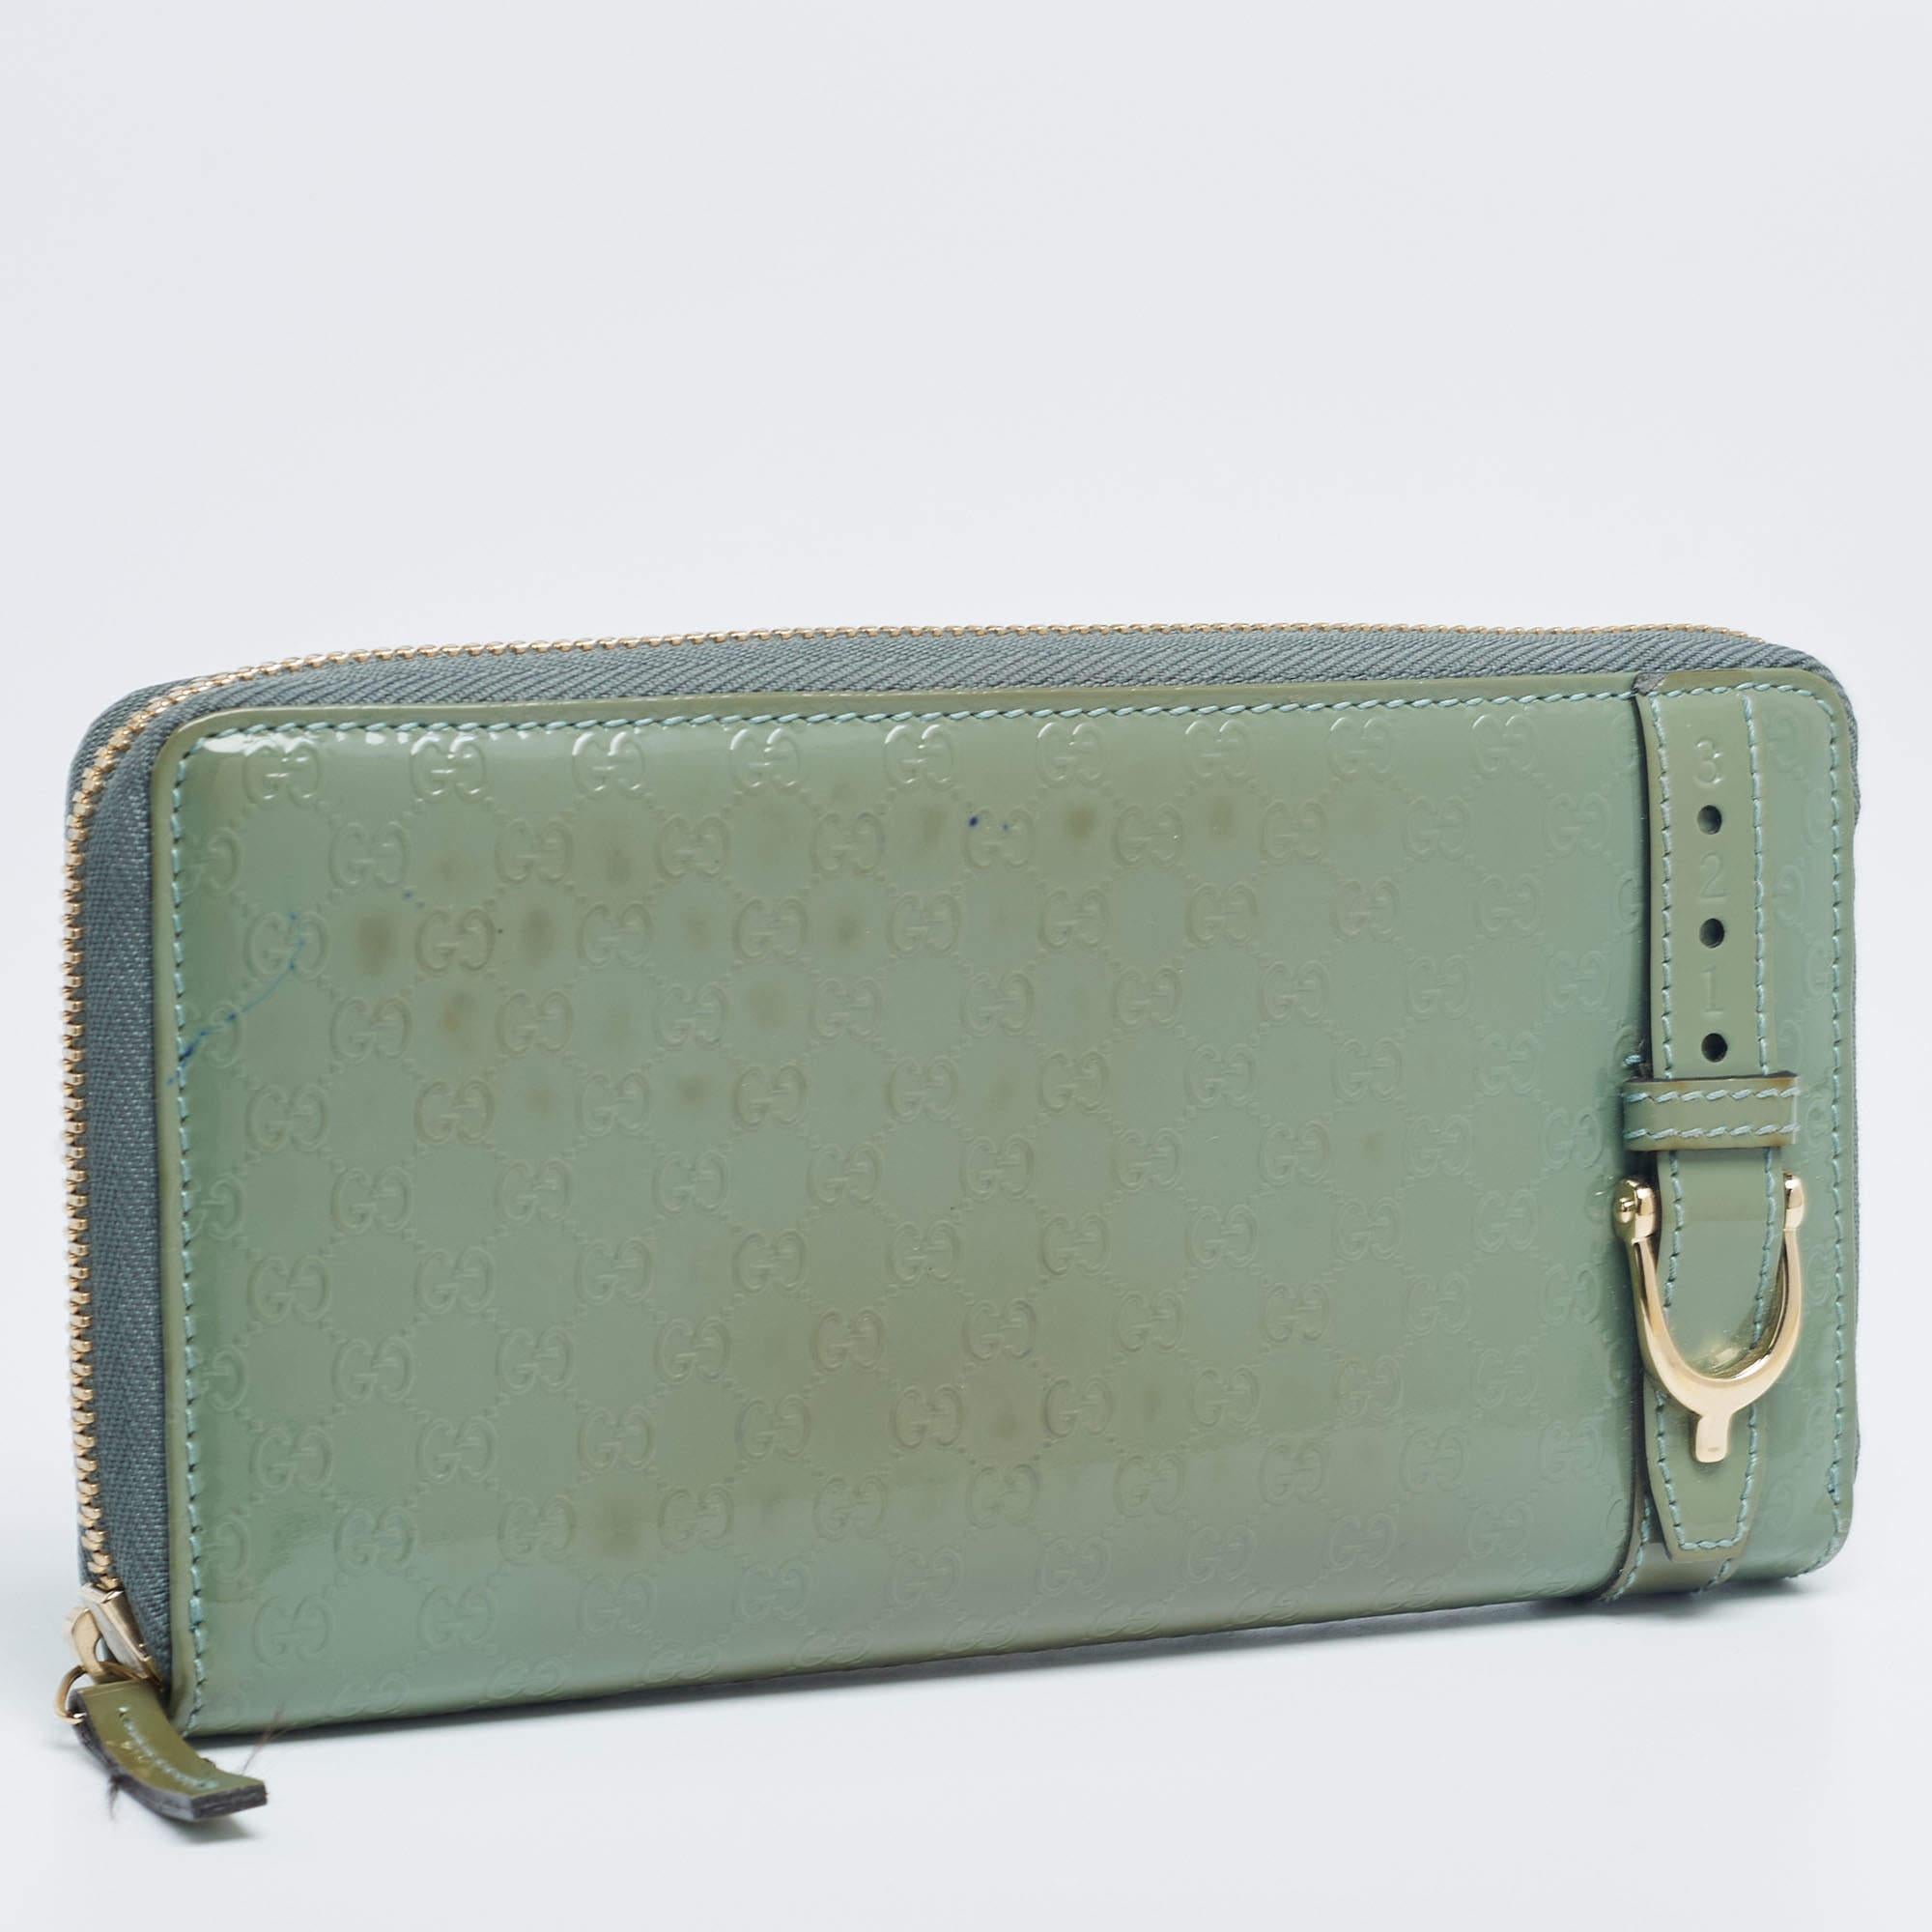 Mit diesem Portemonnaie von Gucci haben Sie Ihre wichtigsten Utensilien immer an einem sicheren Ort. Die aus grünem Microguccissima-Lackleder gefertigte Brieftasche ist mit goldfarbenen Beschlägen verziert und hat einen Reißverschluss. Sie ist mit